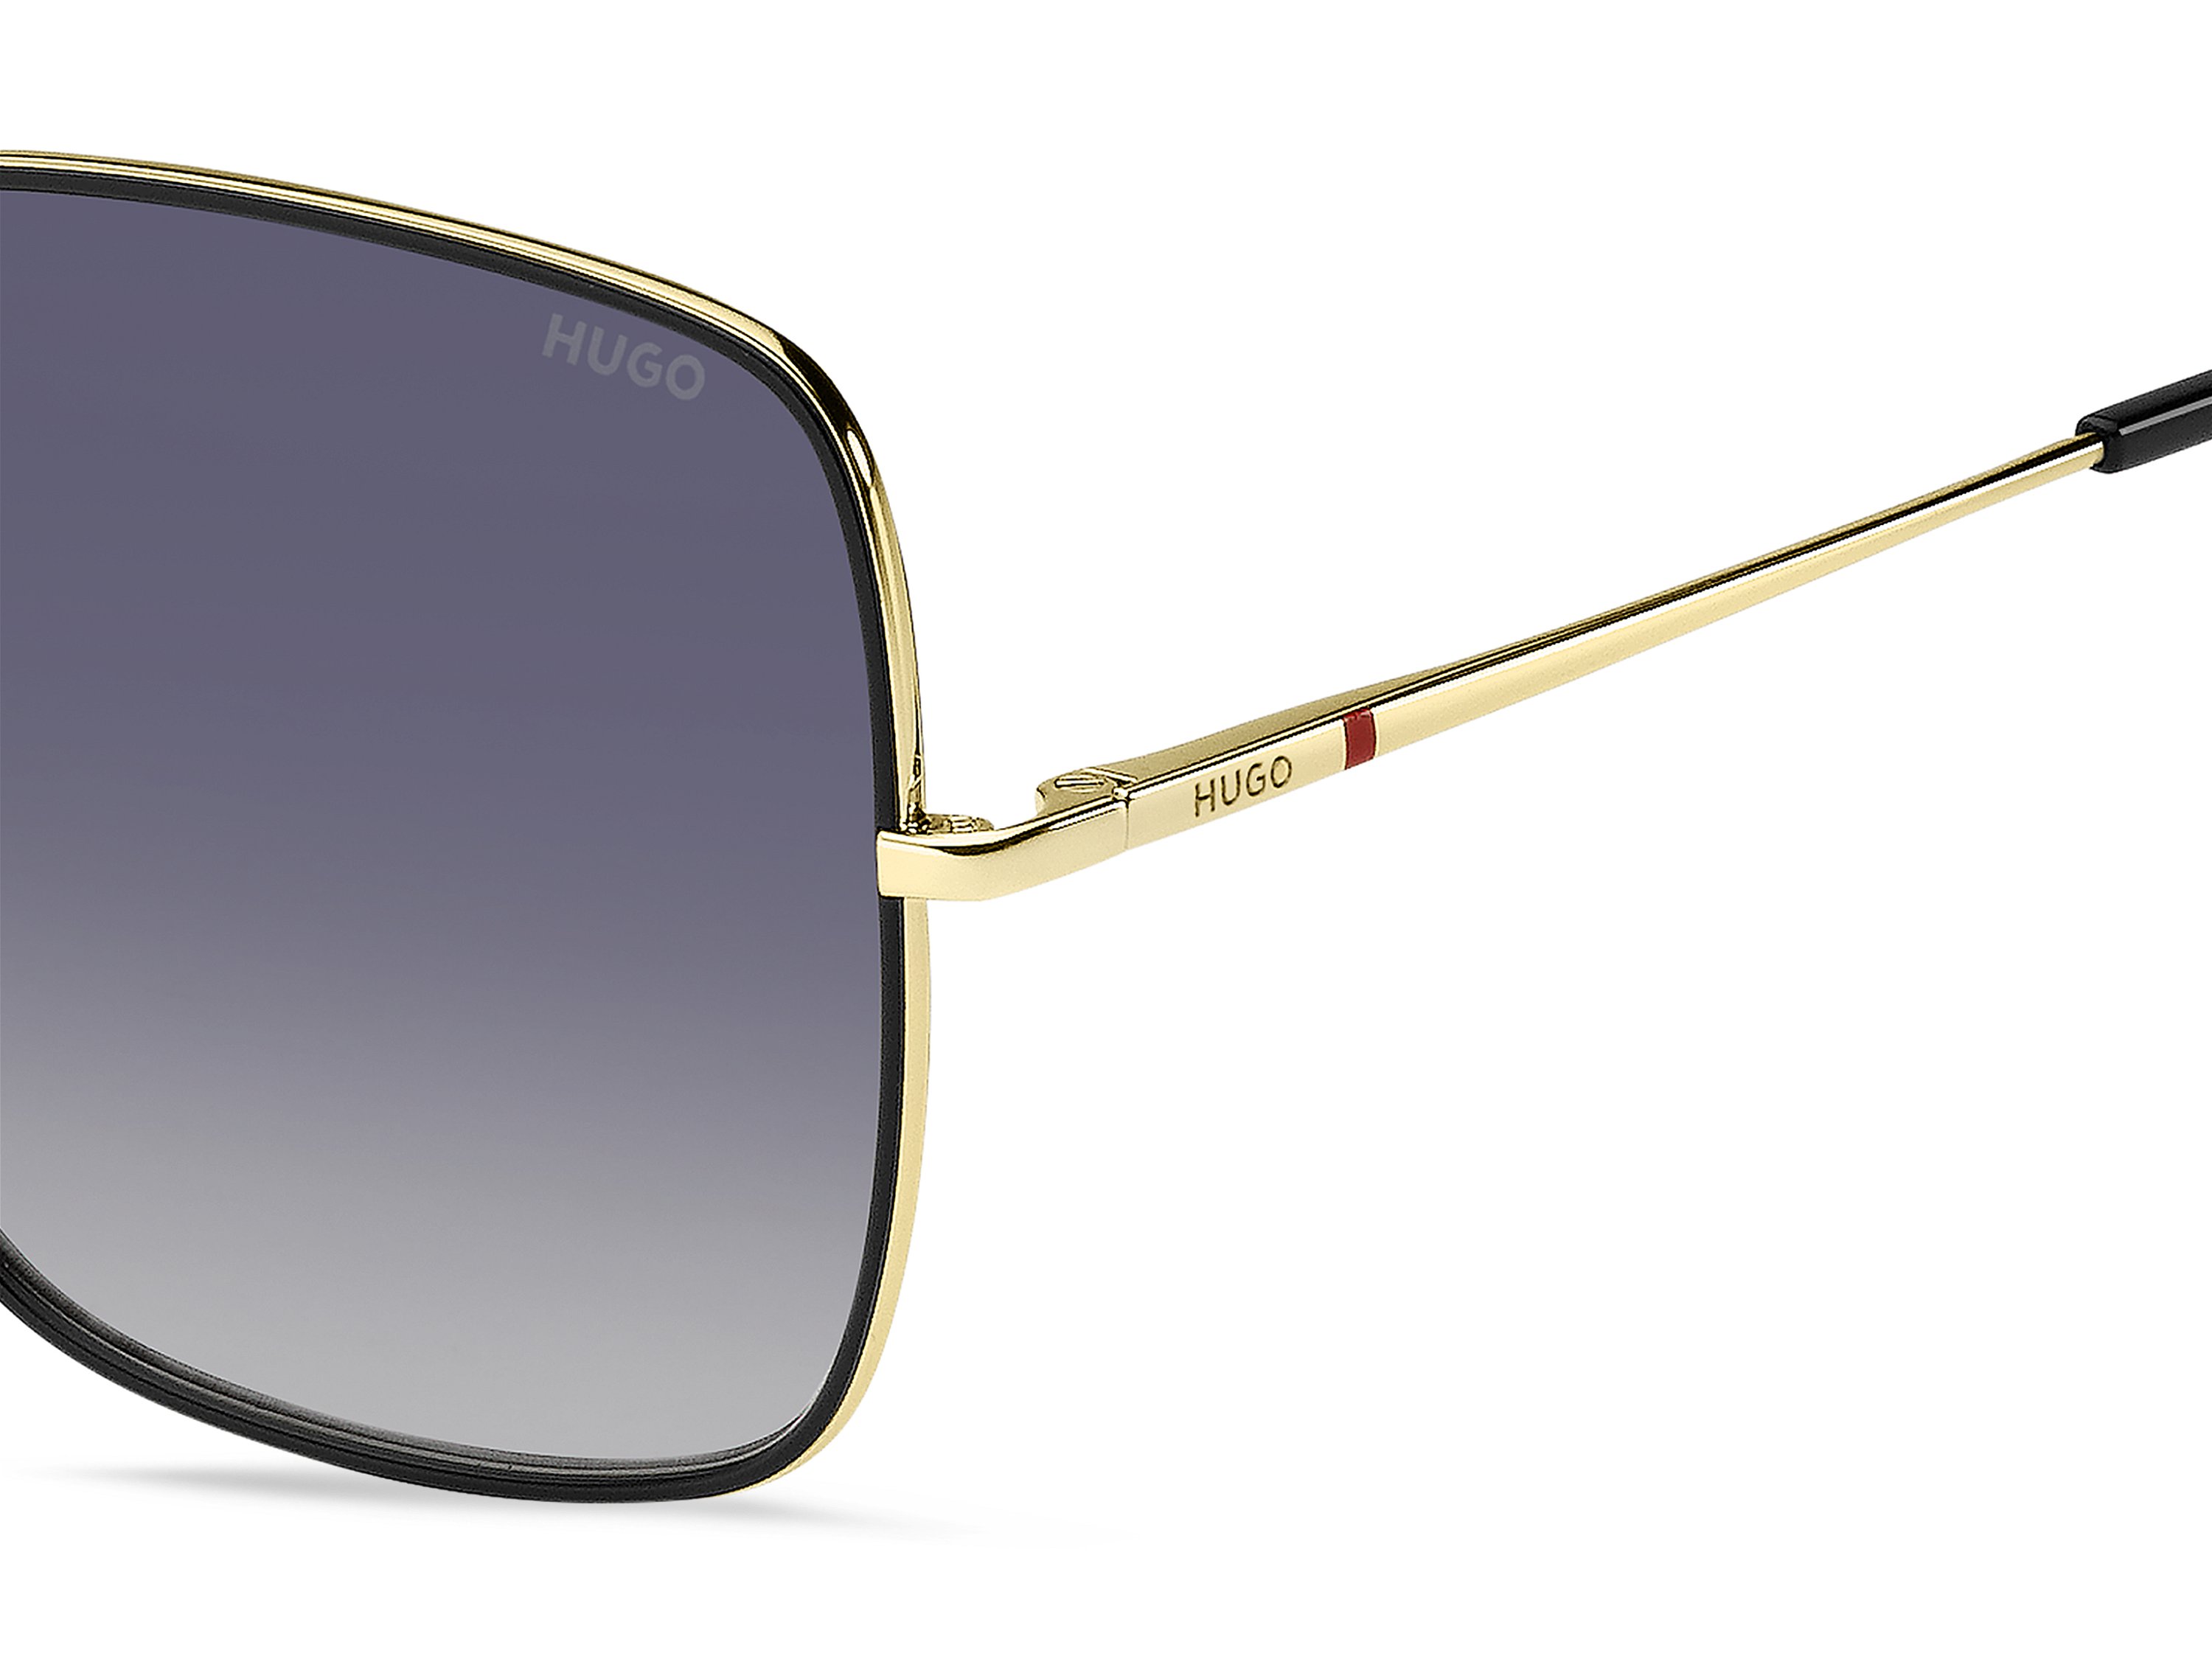 Das Bild zeigt die Sonnenbrille HG1293/S RHL von der Marke Hugo in gold/schwarz.